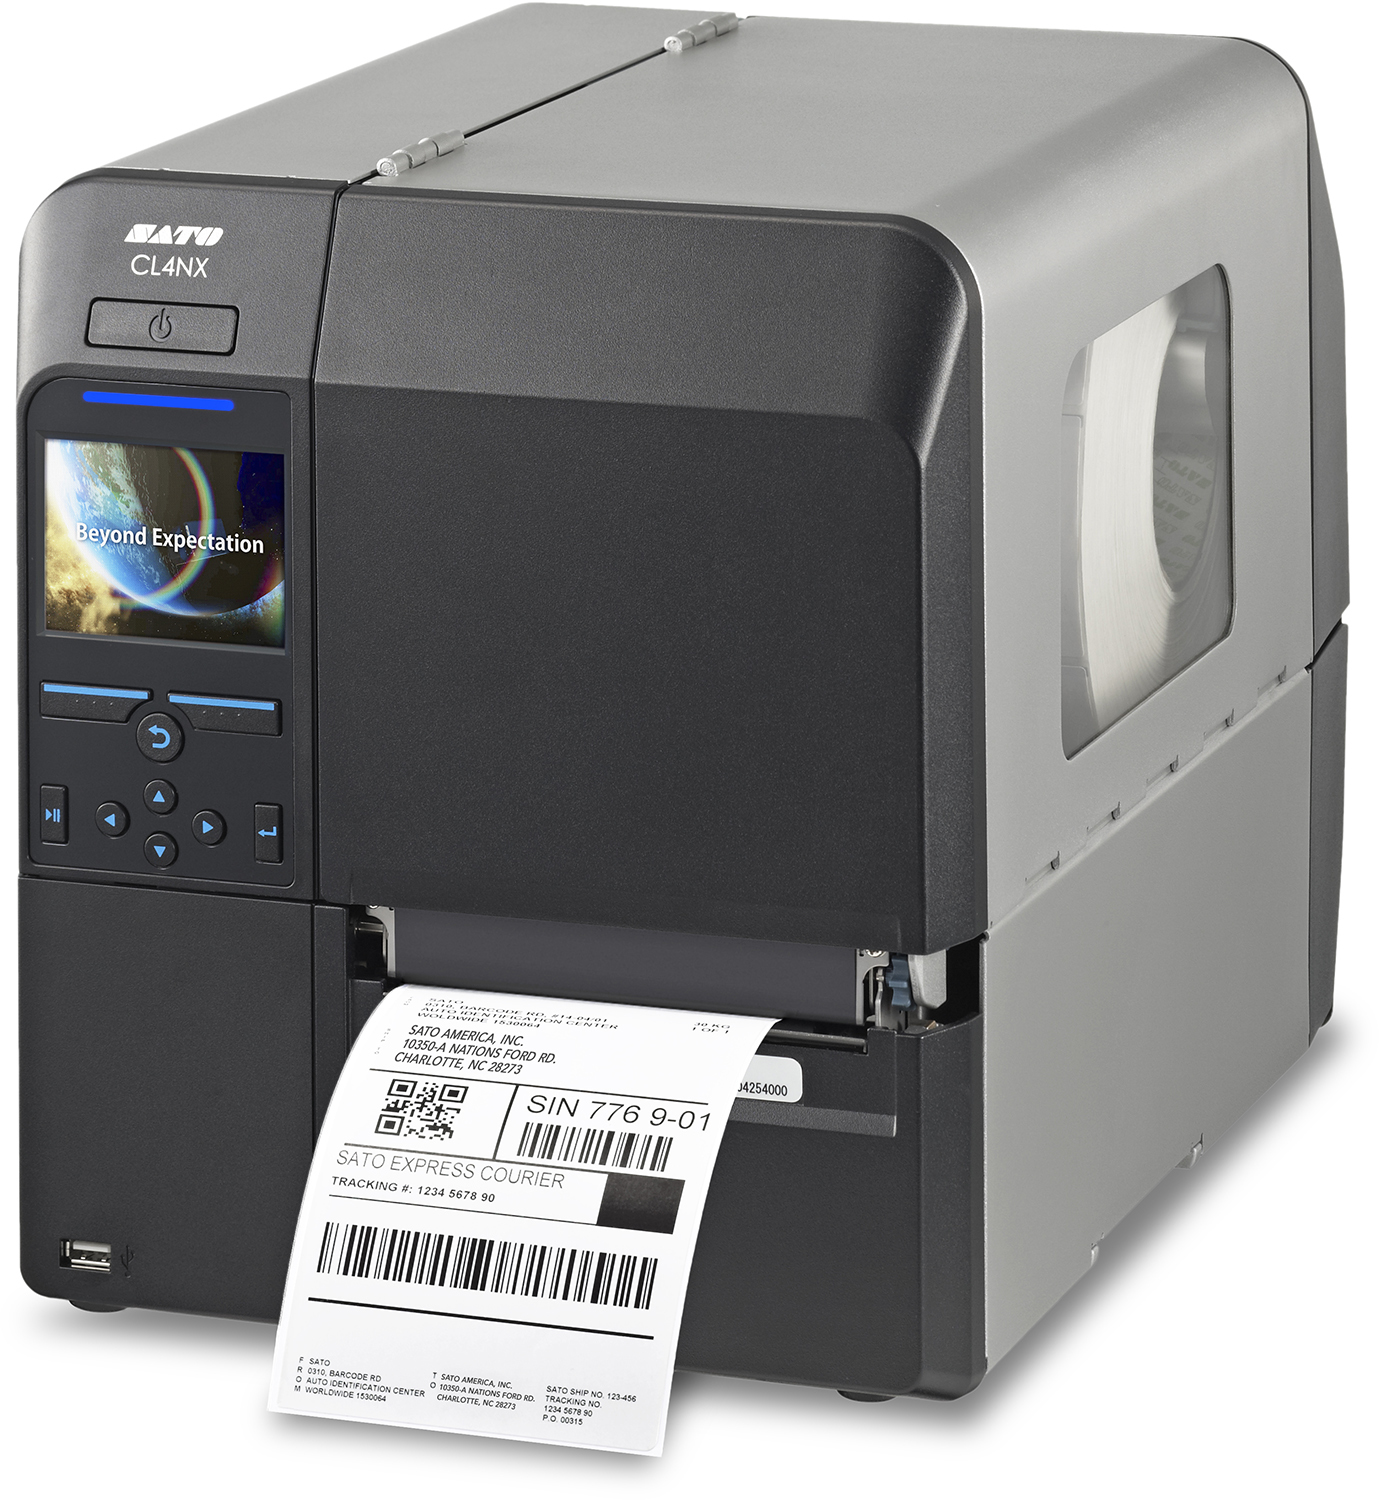 Sato CL4NX Printer Accessories